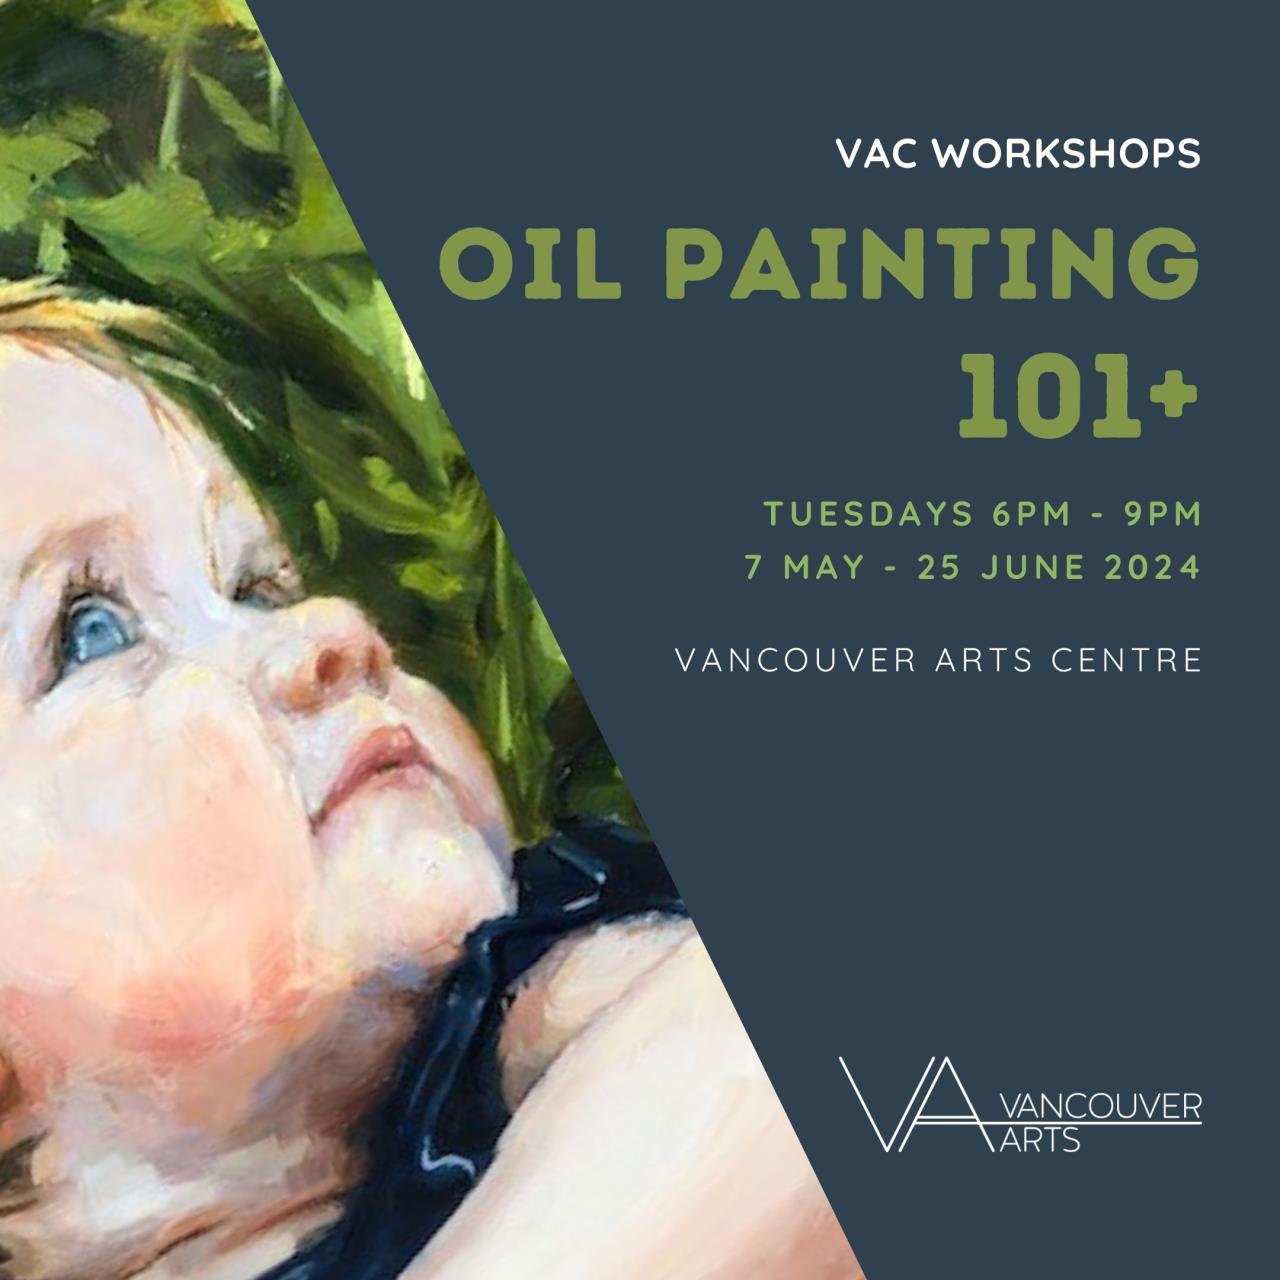 Oil Painting 101+ workshop series